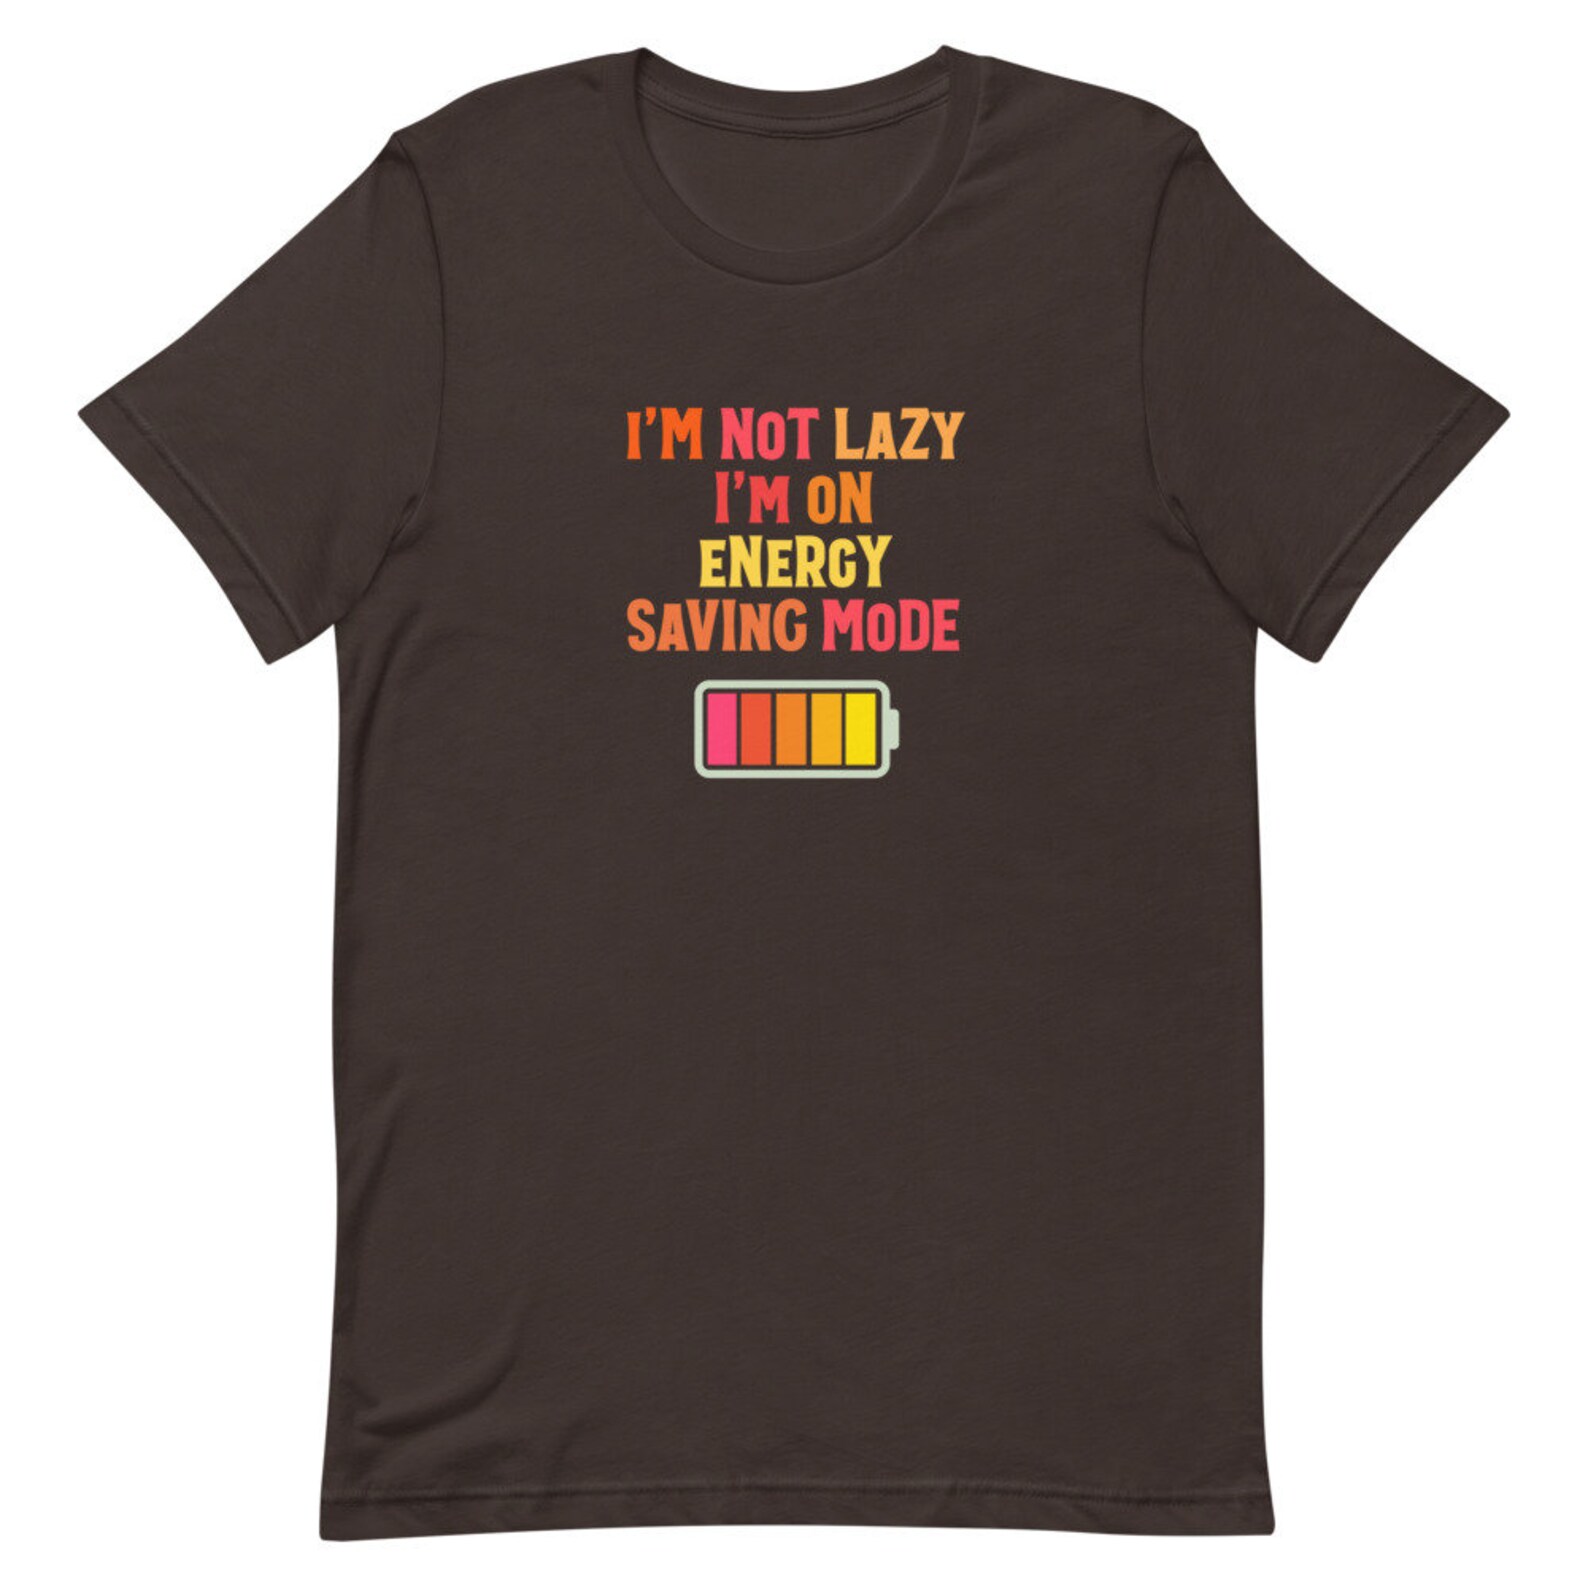 I'm Not Lazy I'm on Energy Saving Mode Chilled - Etsy UK